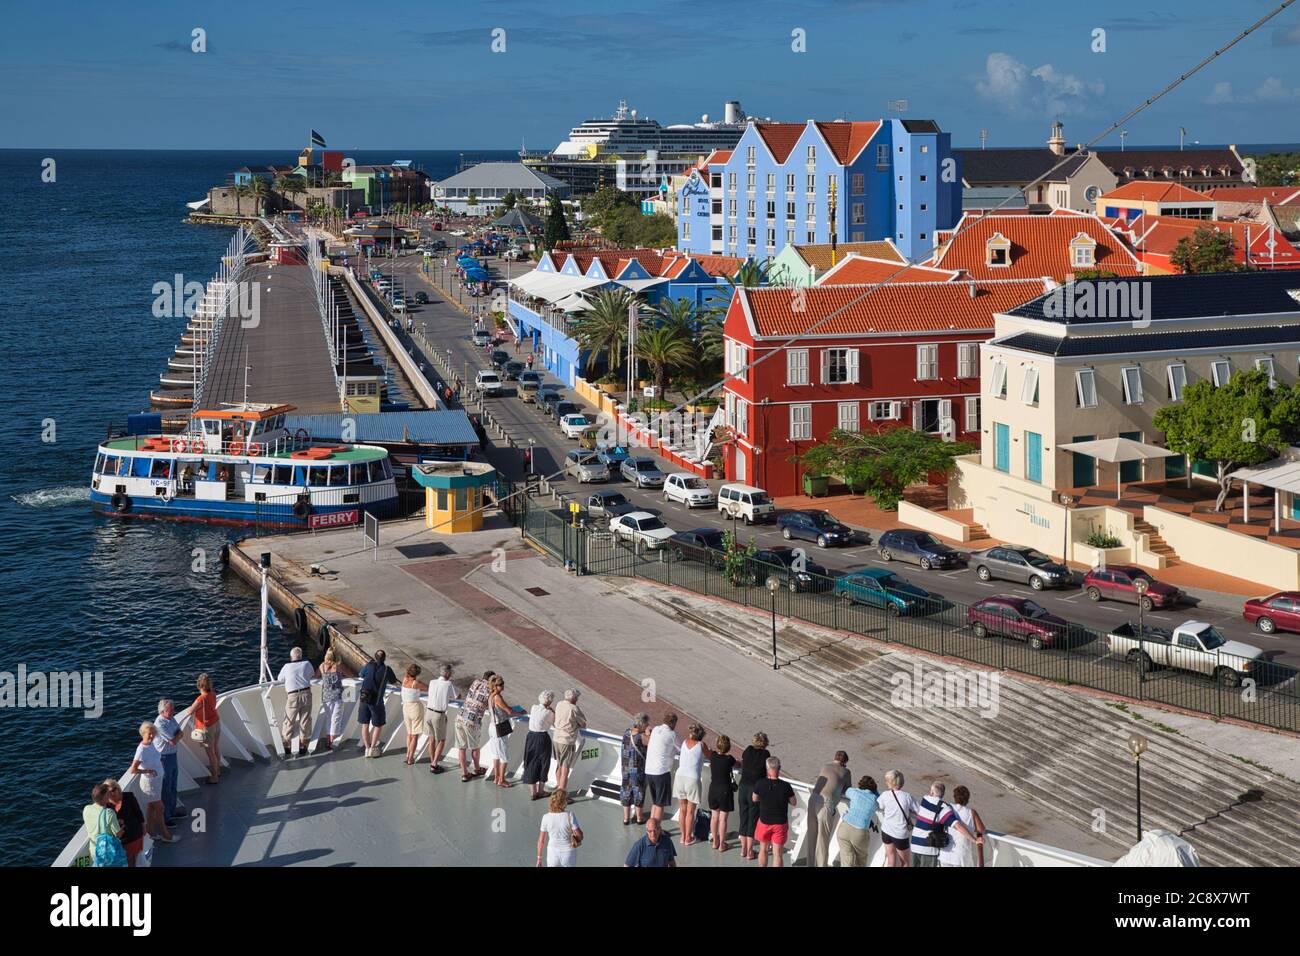 Passagiere auf den Bögen eines Kreuzfahrtschiffes sehen die bunte Architektur und Gebäude in Willemstad, Curacao, der Karibik Stockfoto